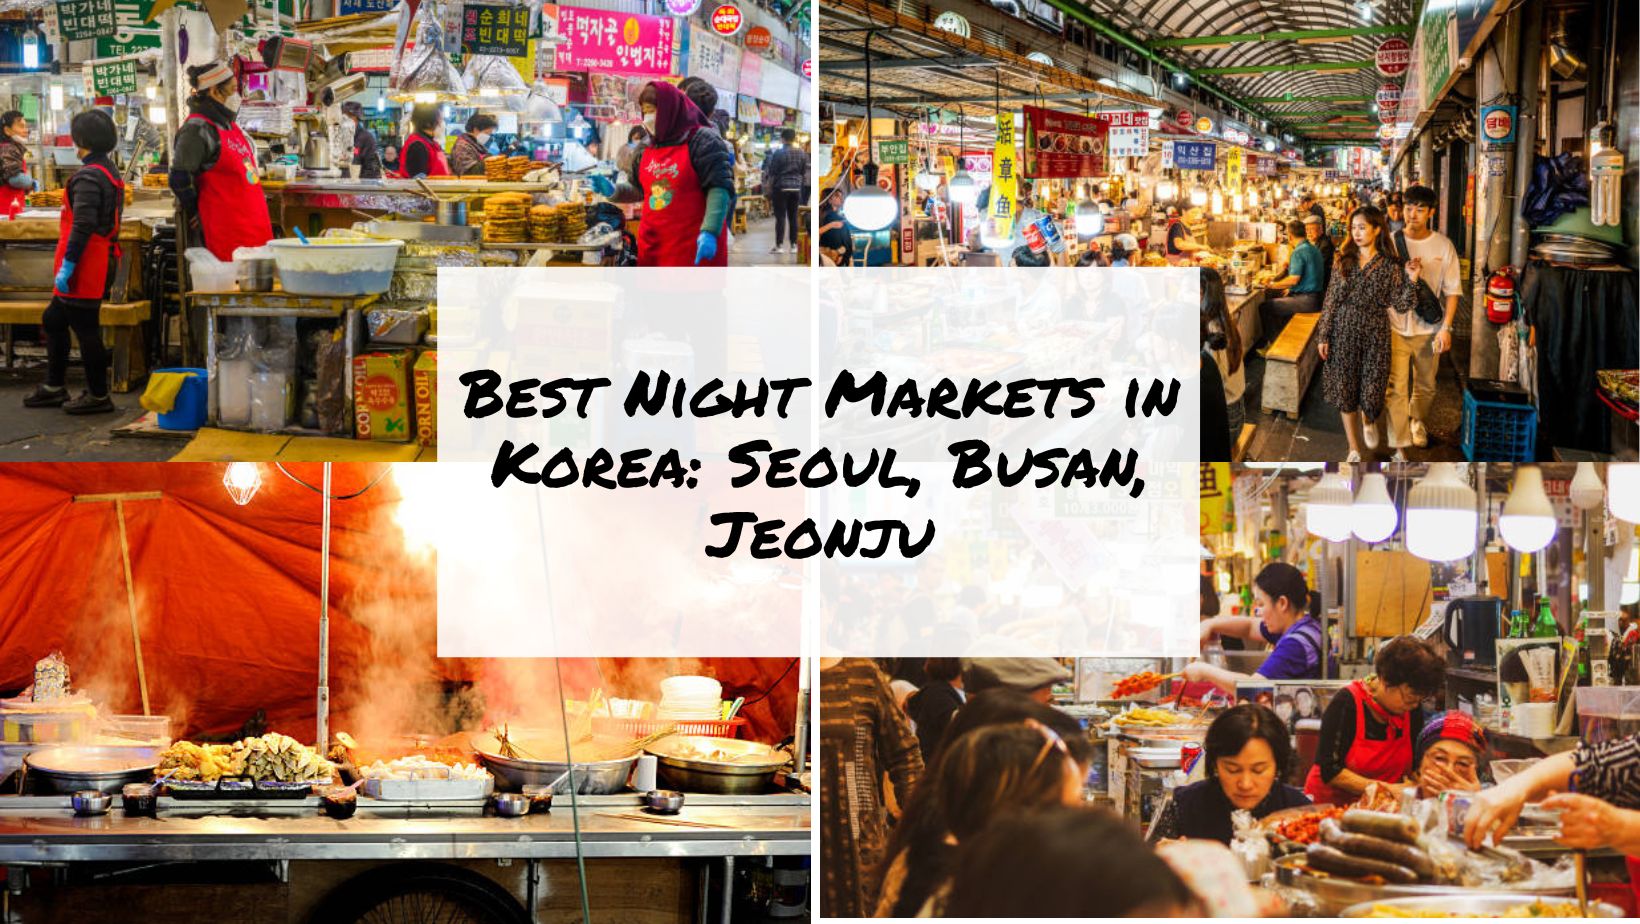 Best Night Markets in Korea Seoul, Busan, Jeonju